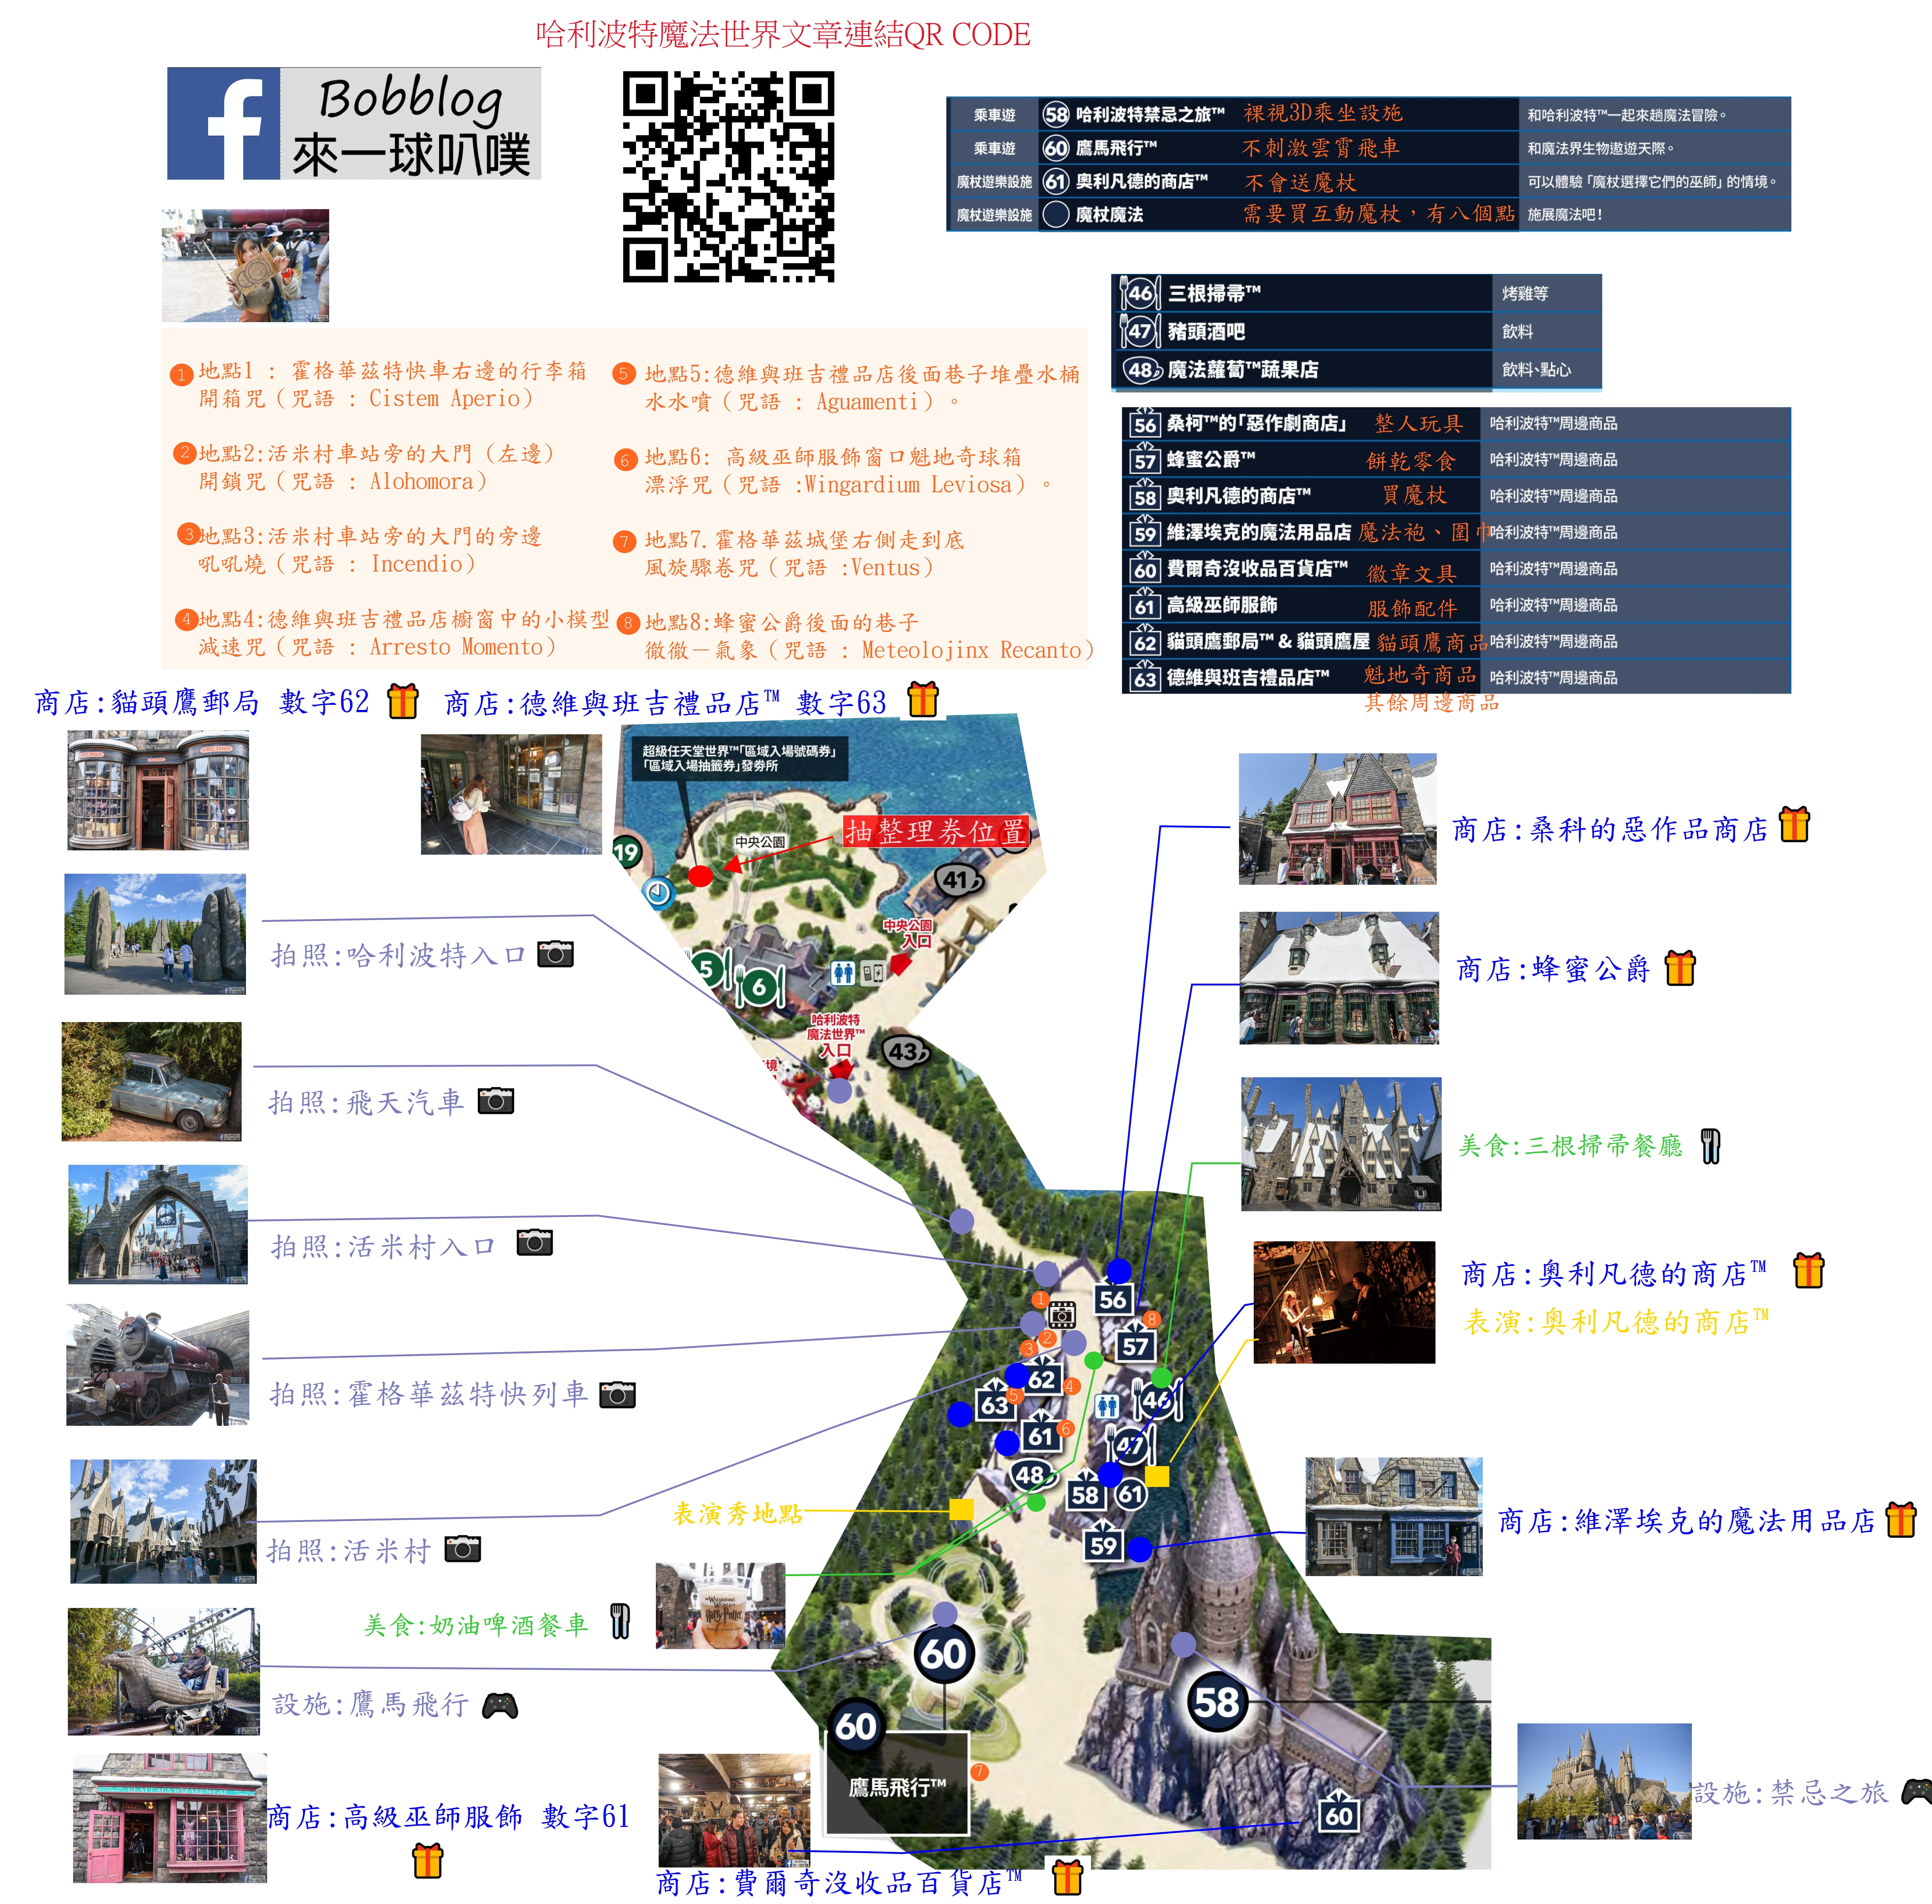 日本大阪環球影城哈利波特|設施商品美食地圖整理